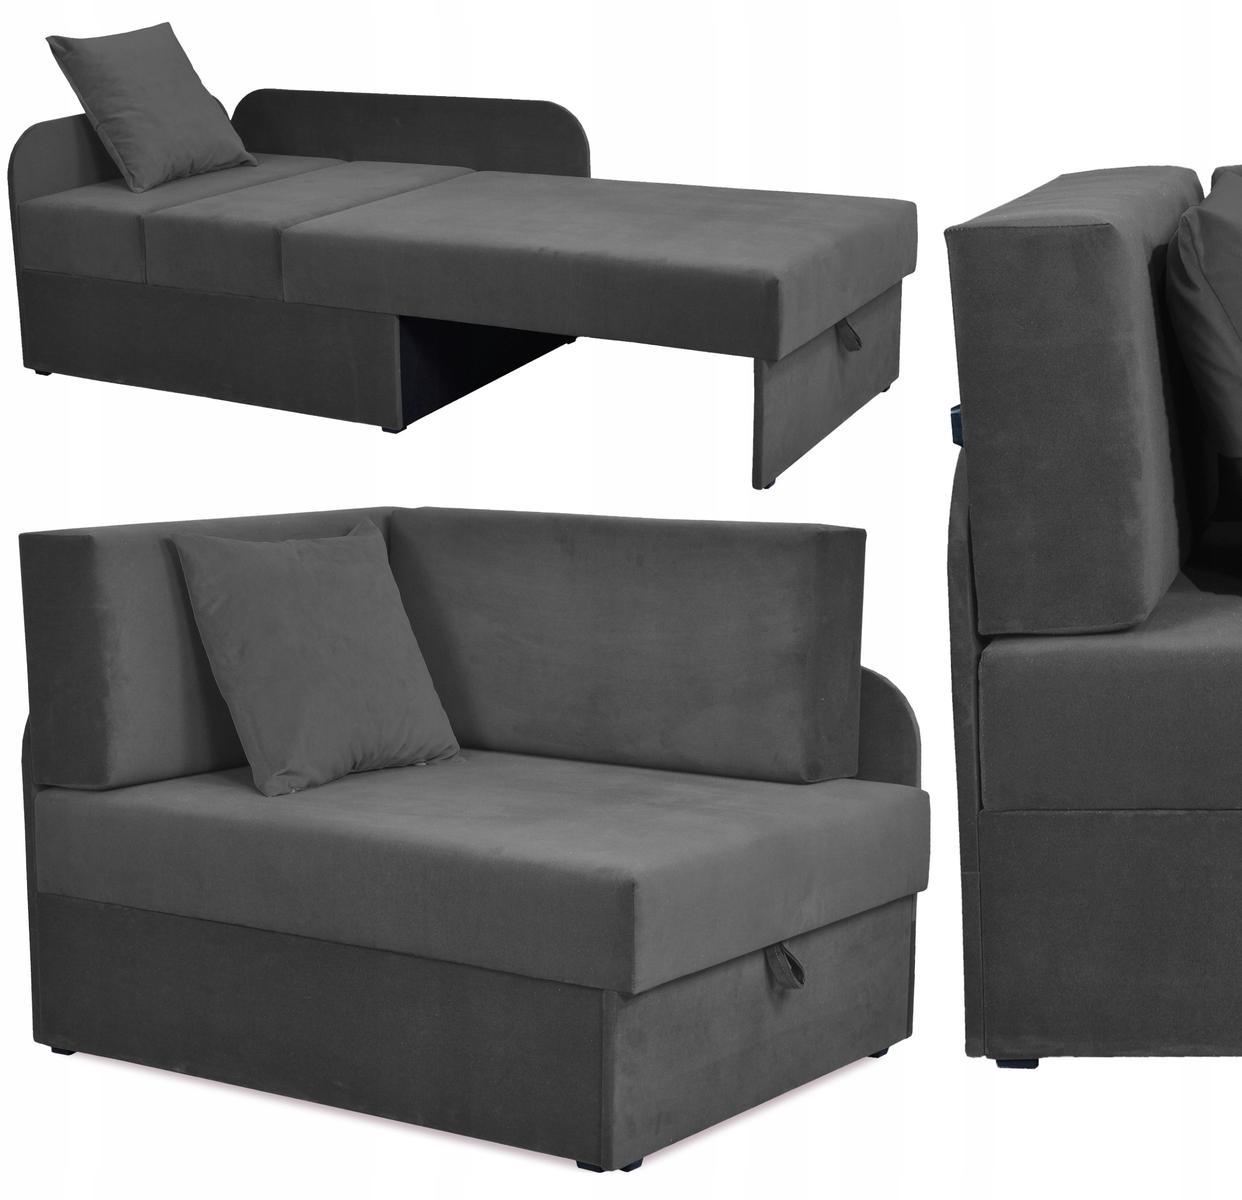 Sofa rozkładana DENIS 109x78 cm szara z pojemnikiem na pościel narożnik tapczan kanapa dla dziecka 0 Full Screen